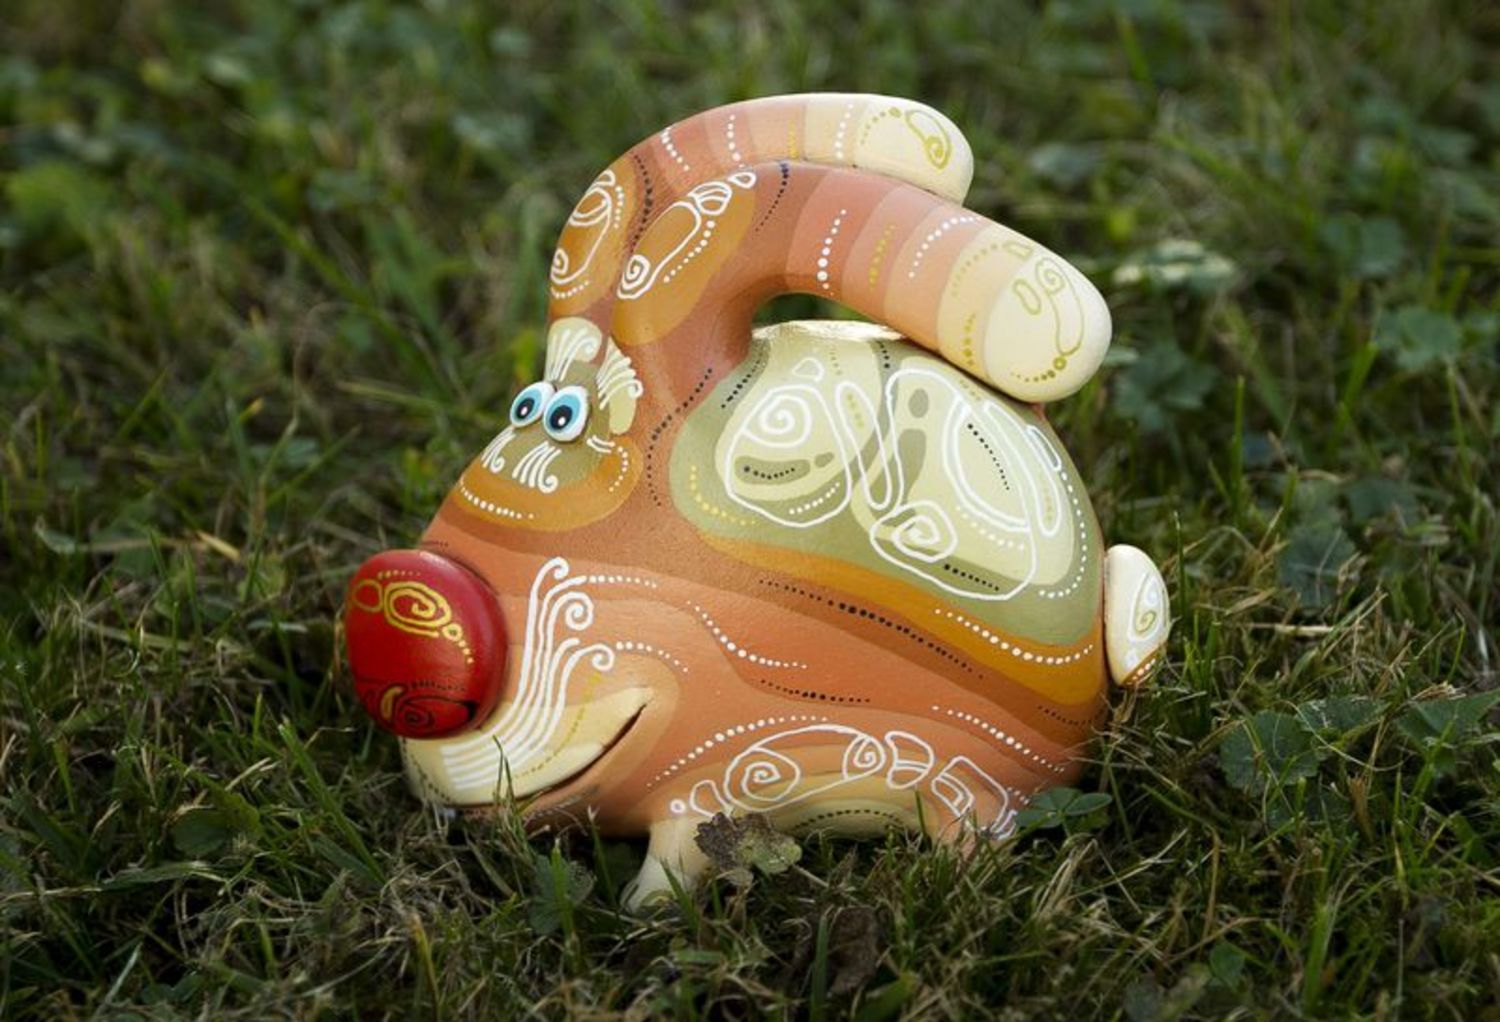 Ceramic bunny figurine photo 1